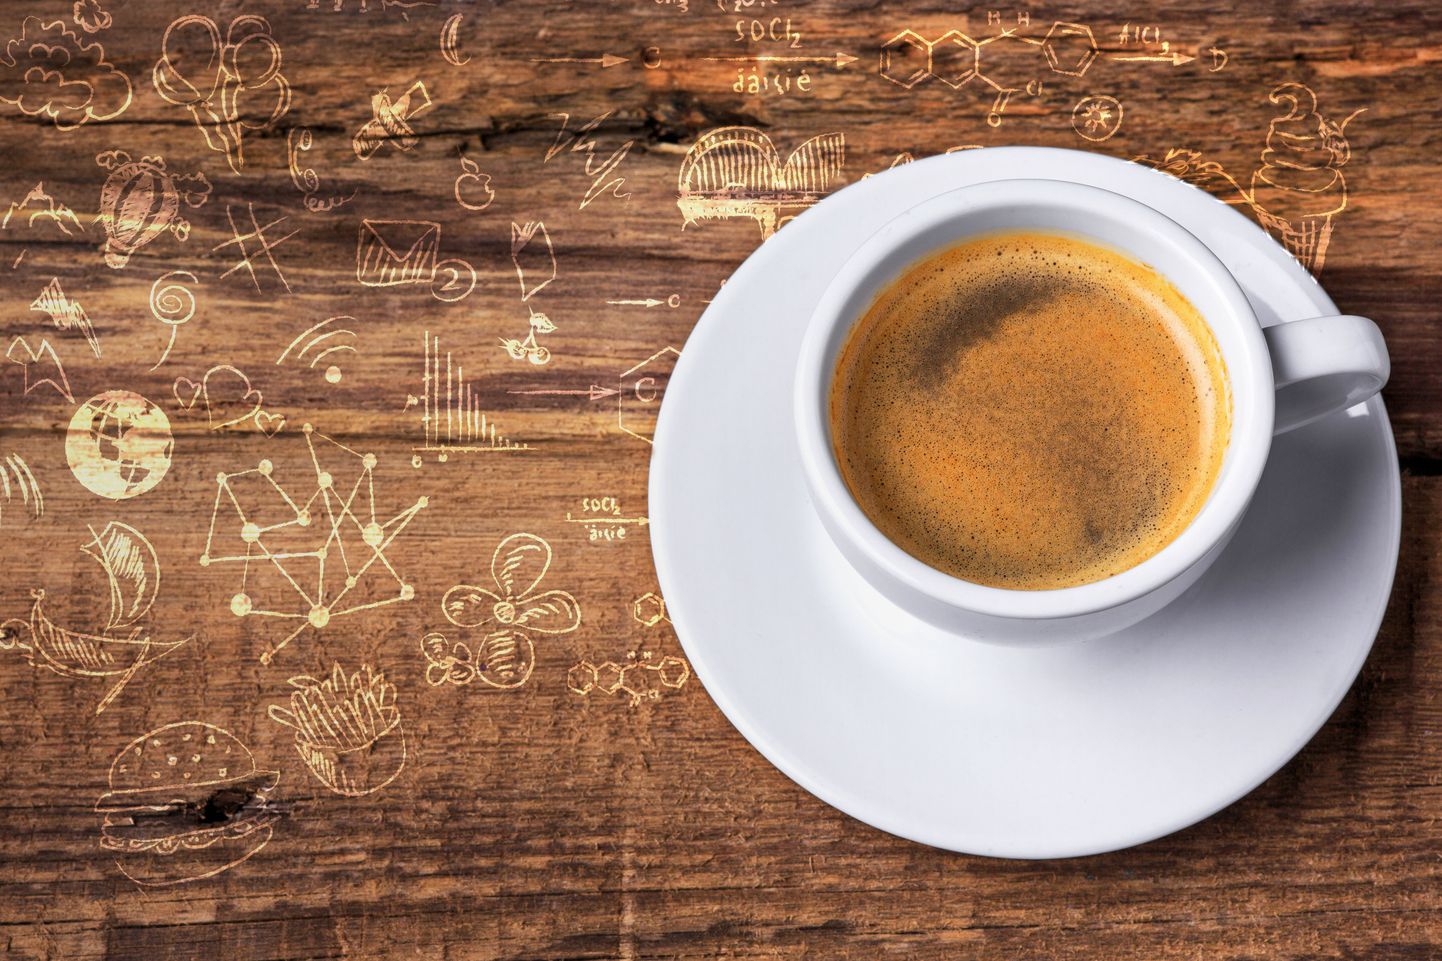 Kohvijoomisel on leitud palju kasulikke mõjusid.